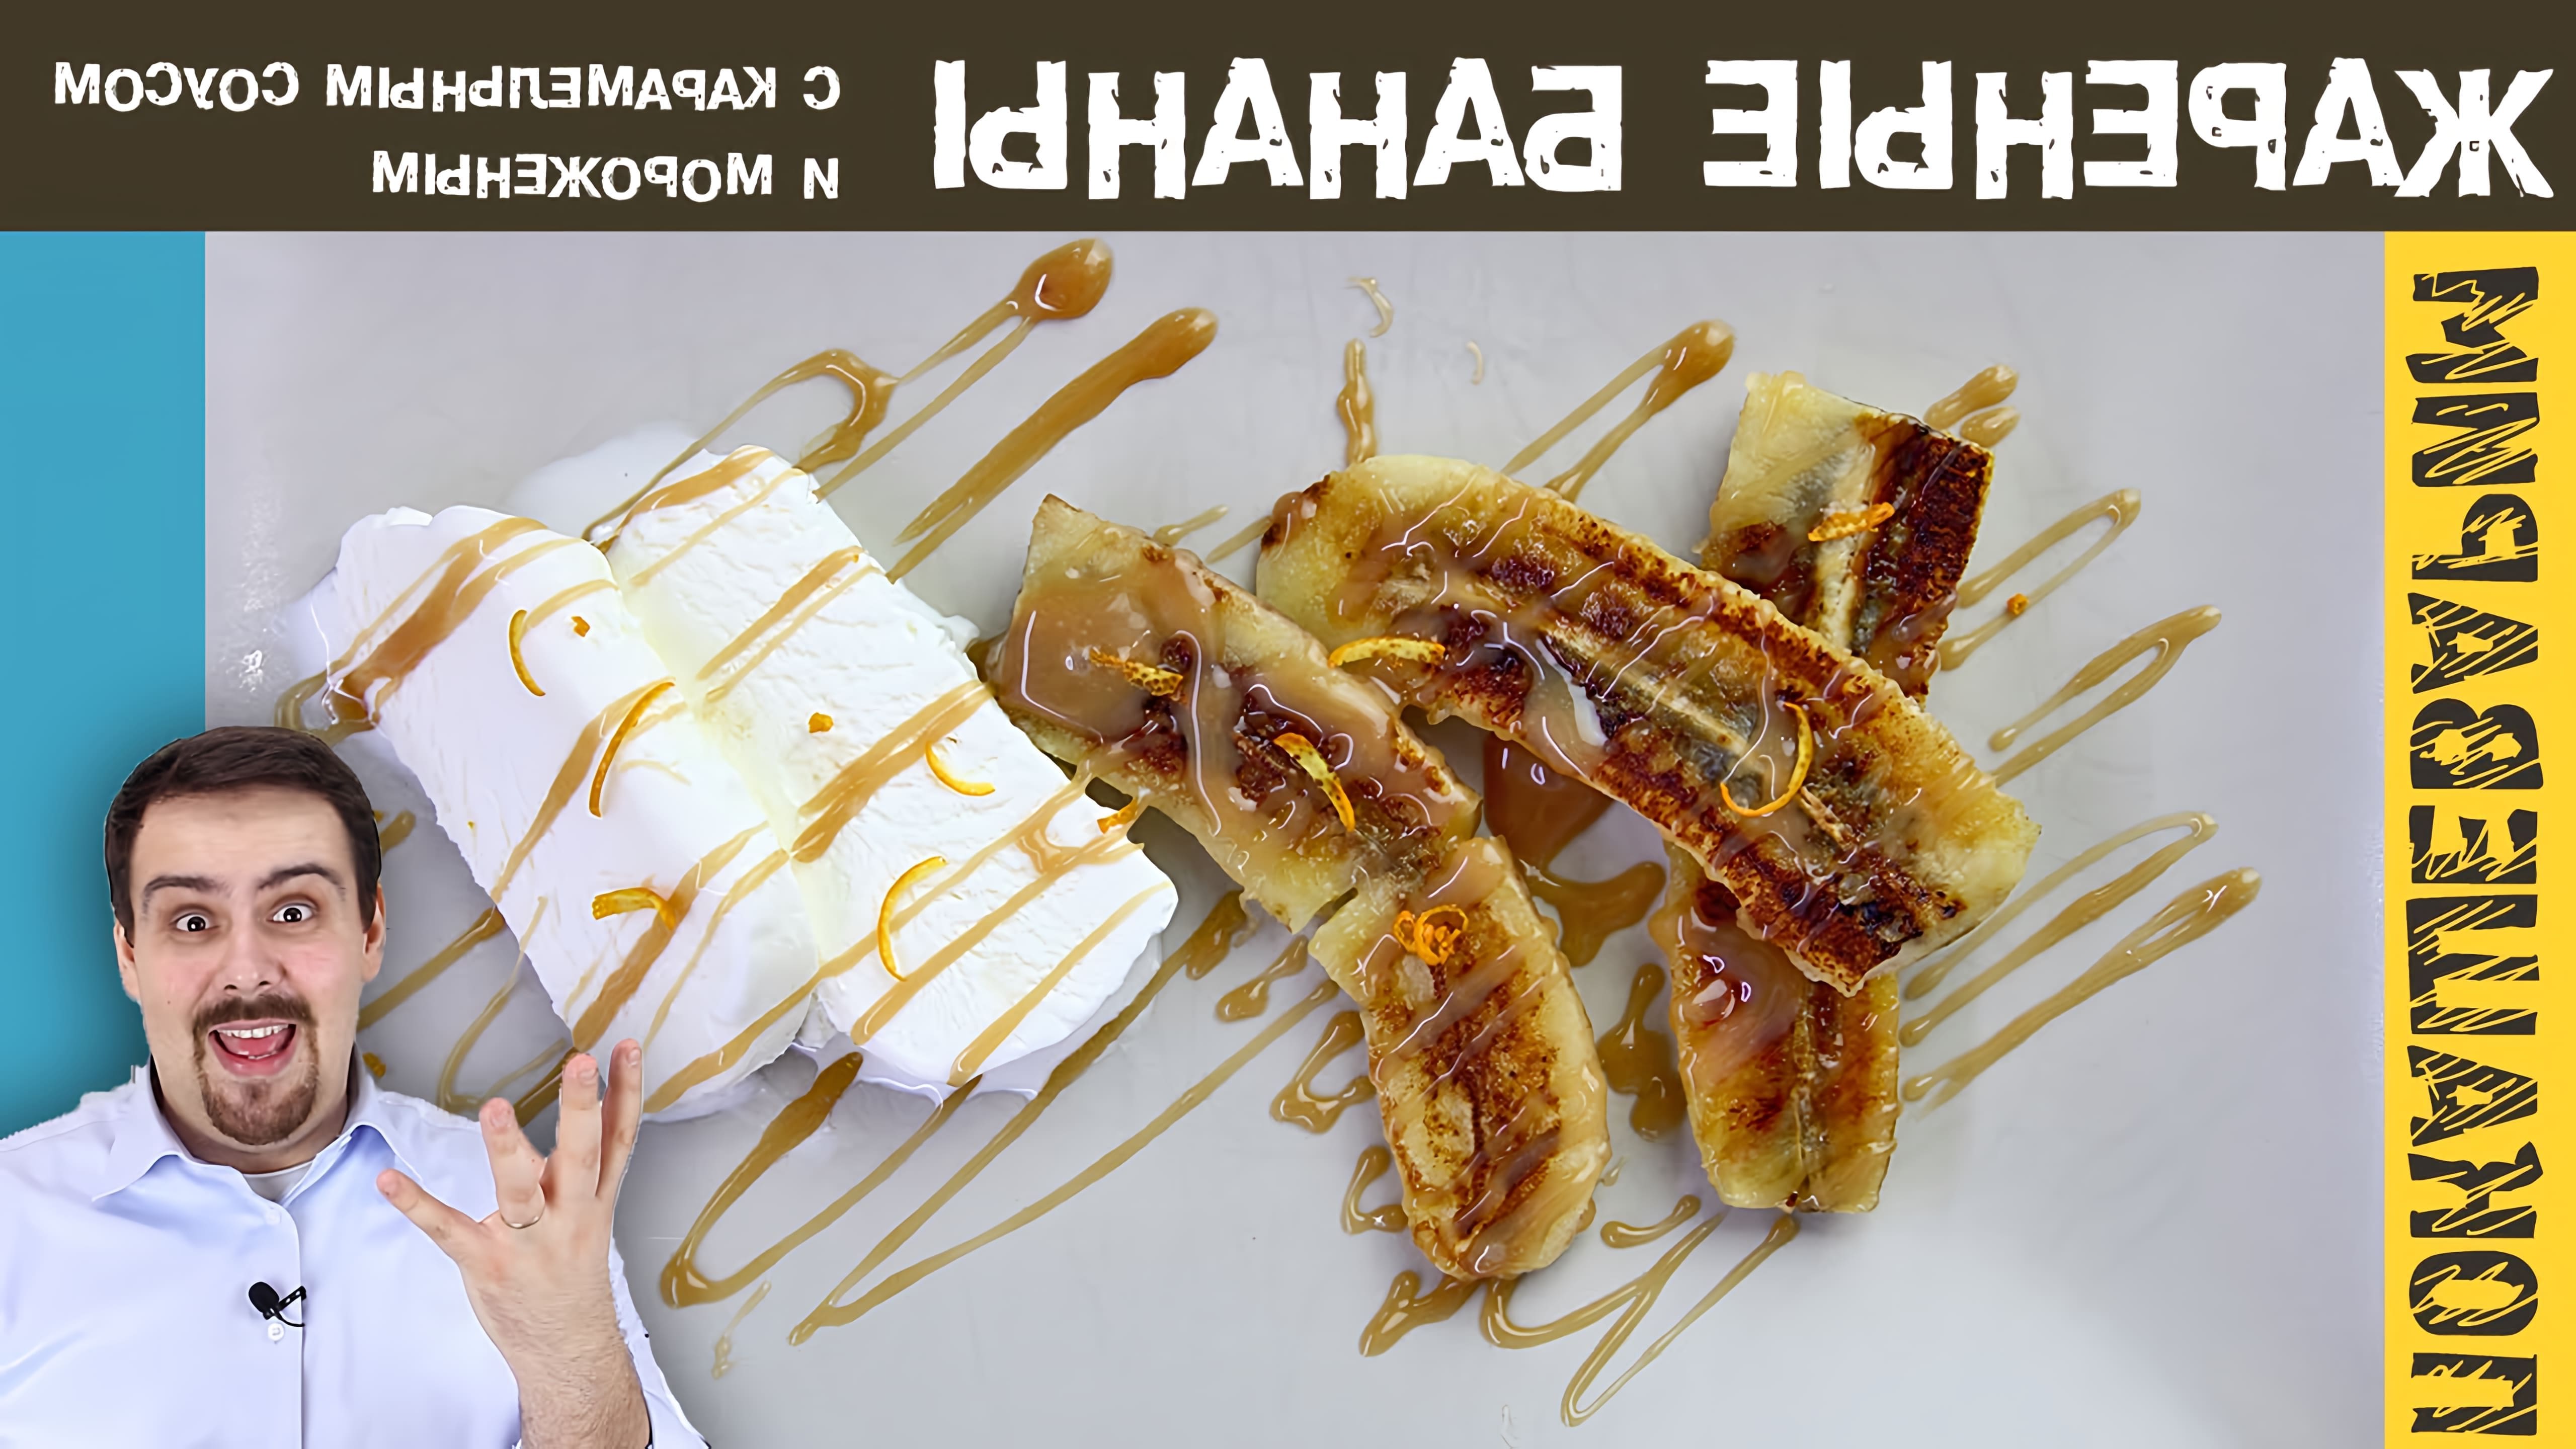 В этом видео показан рецепт приготовления десерта - бананов, жареных в карамельном соусе